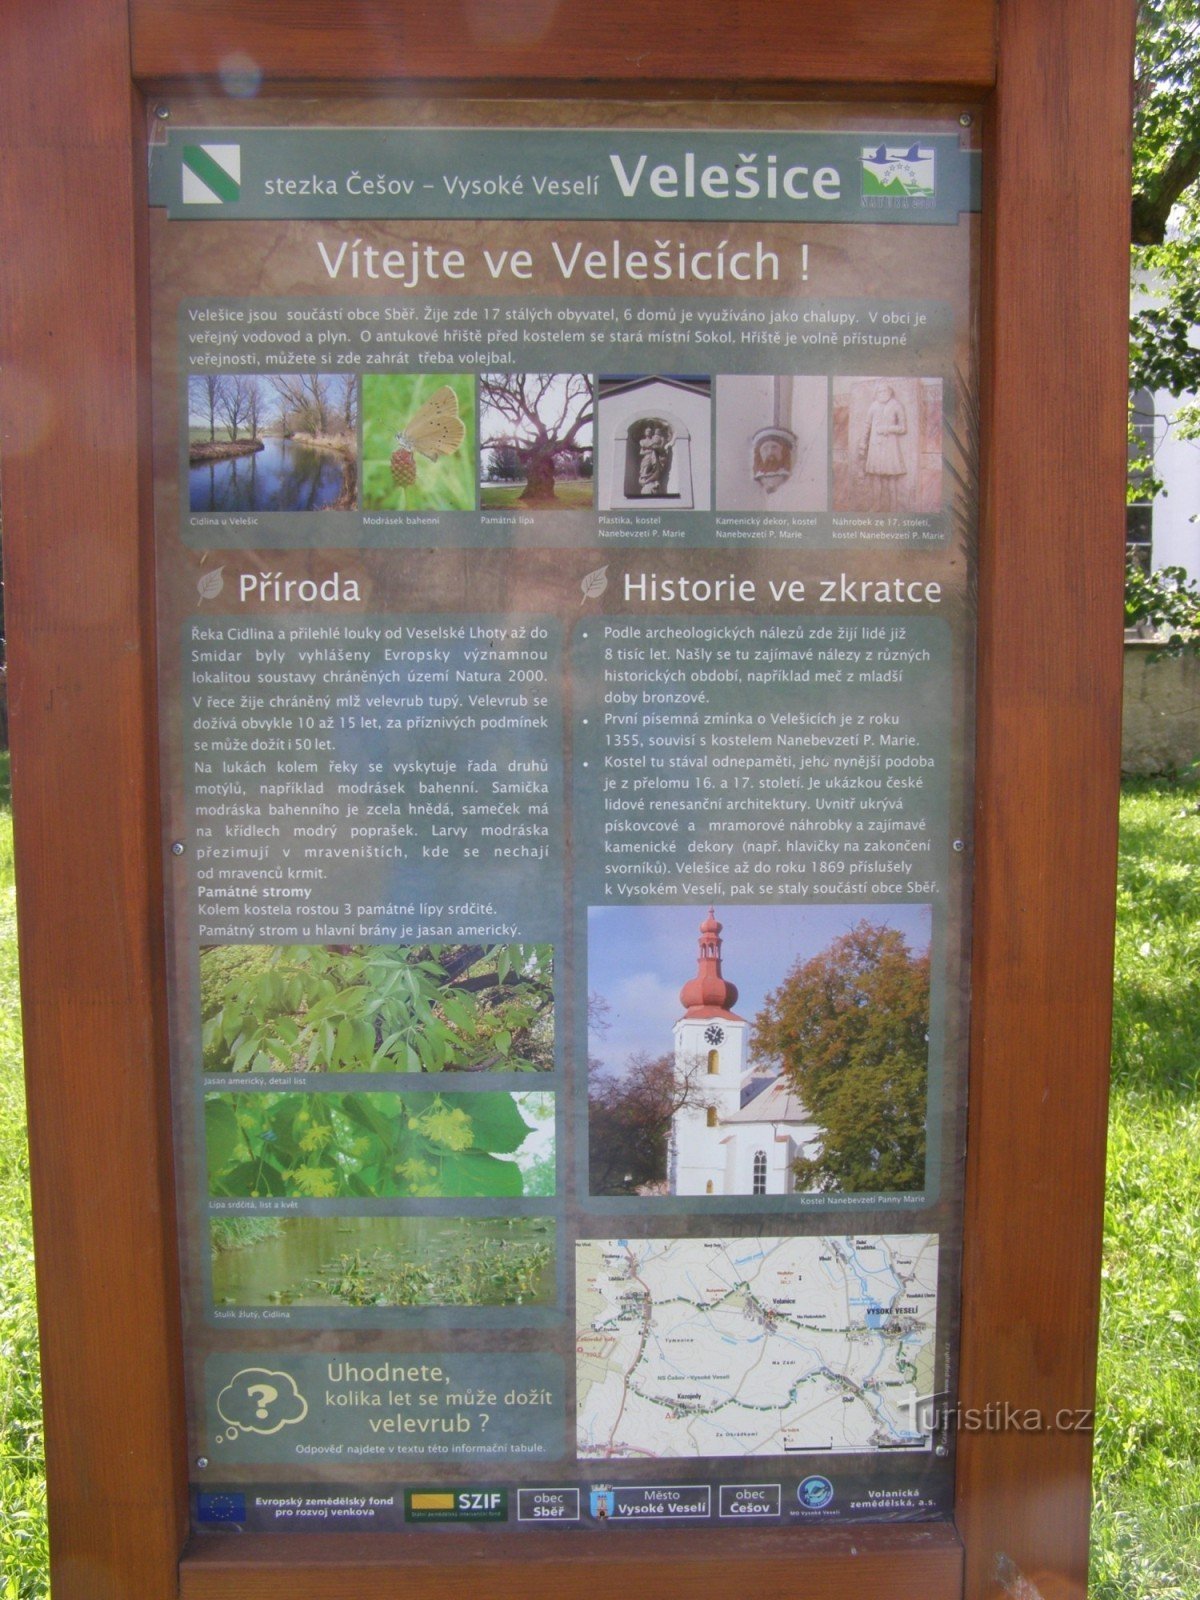 NS Češov-Vysoké Veselí - Velešice 的交汇处